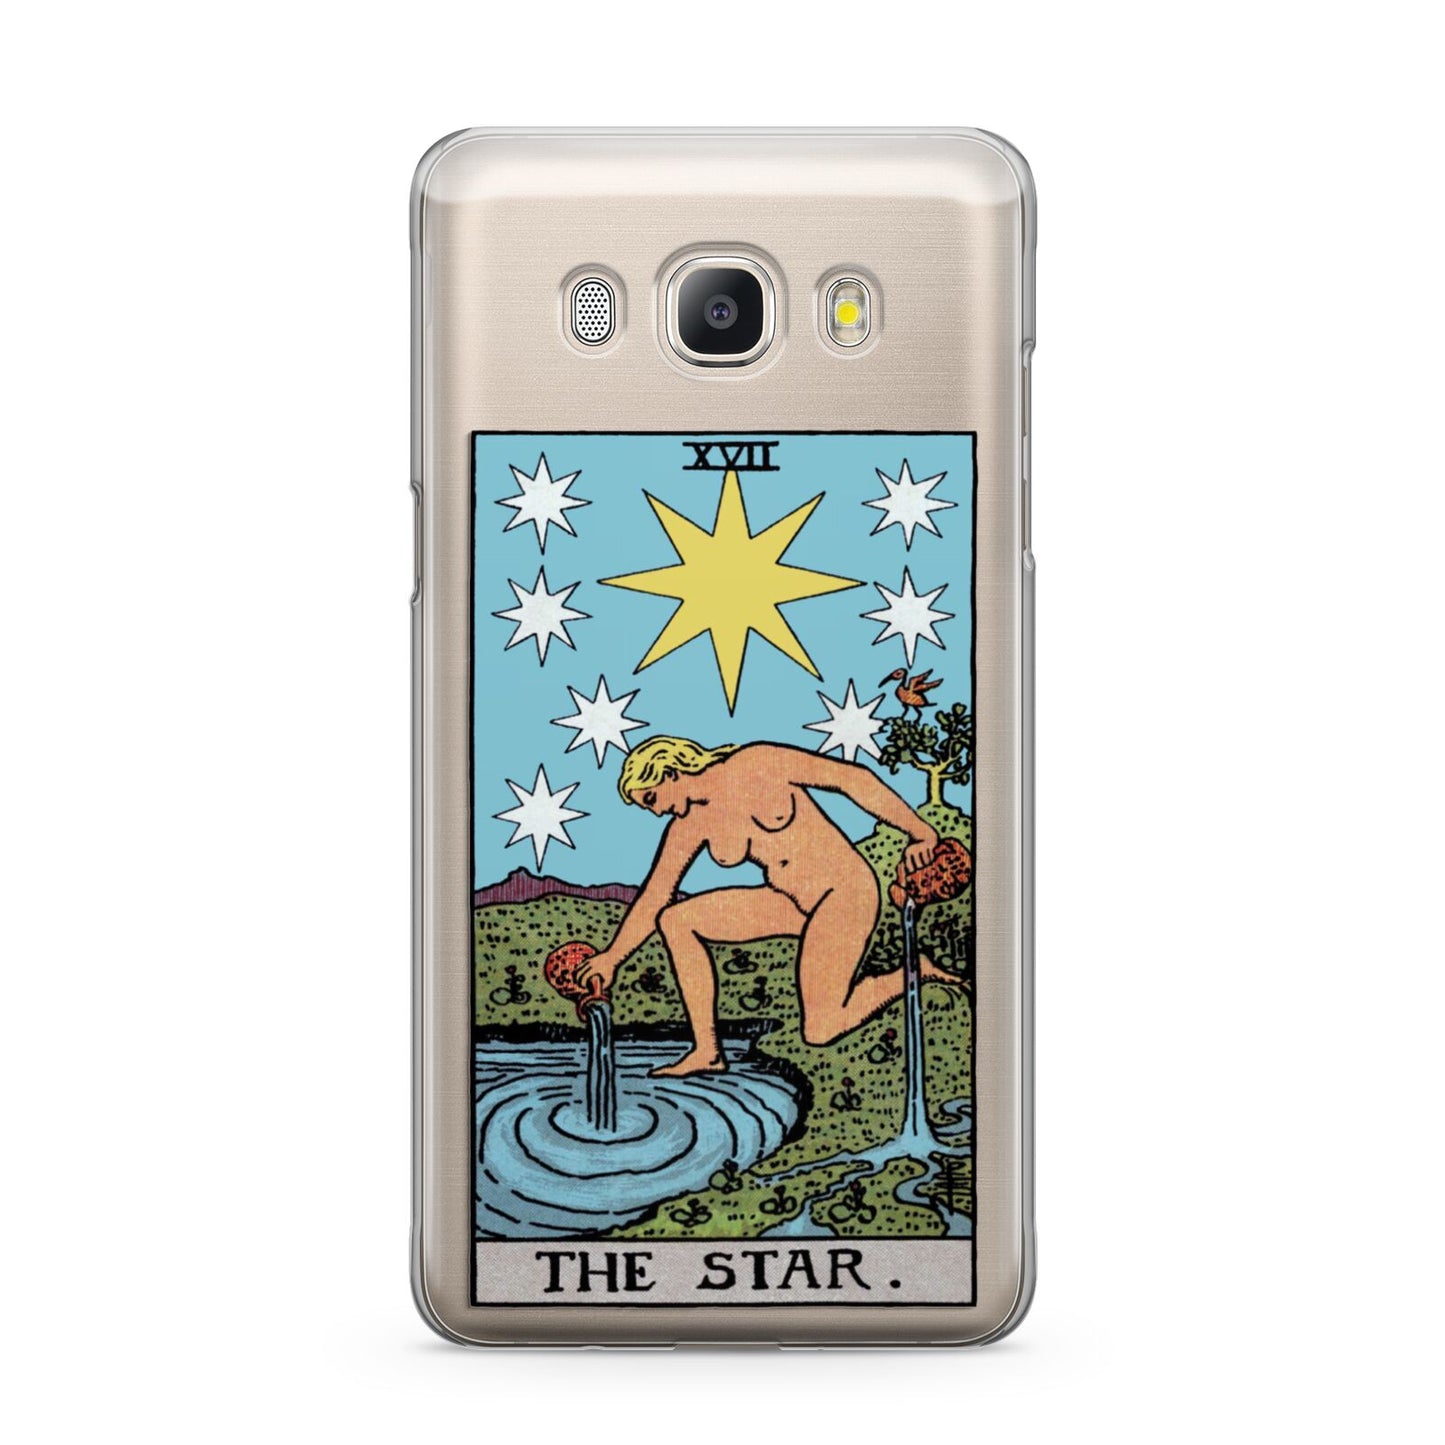 The Star Tarot Card Samsung Galaxy J5 2016 Case